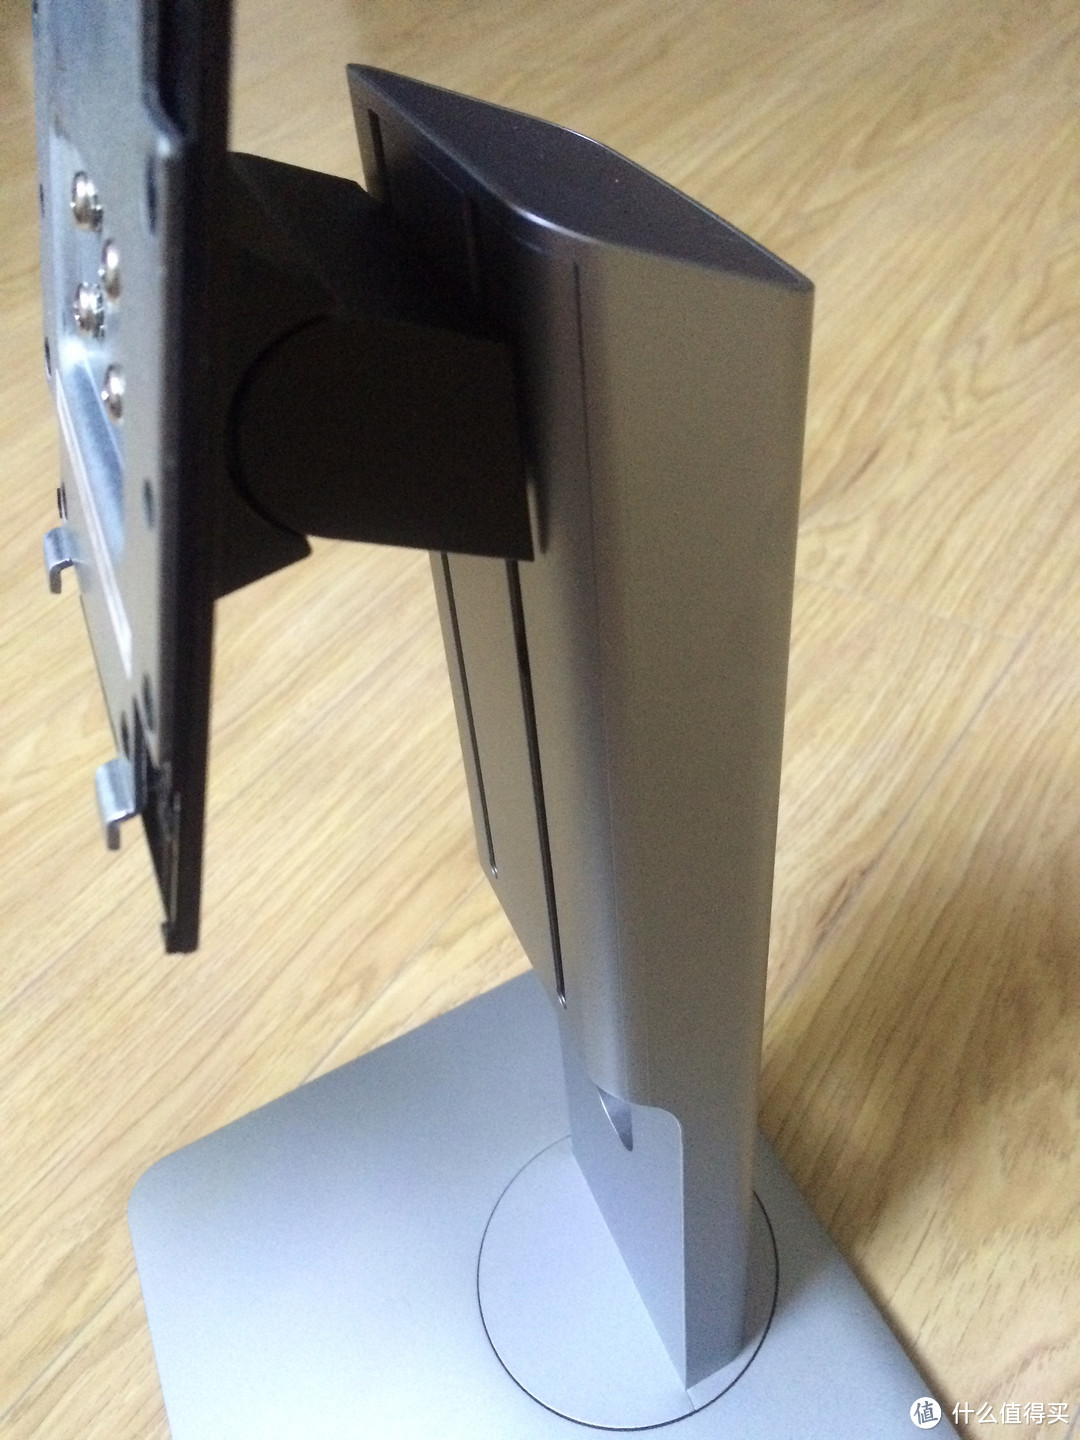 戴尔 UltraSharp U3415W 34英寸曲面显示器 21 天海淘开箱全记录